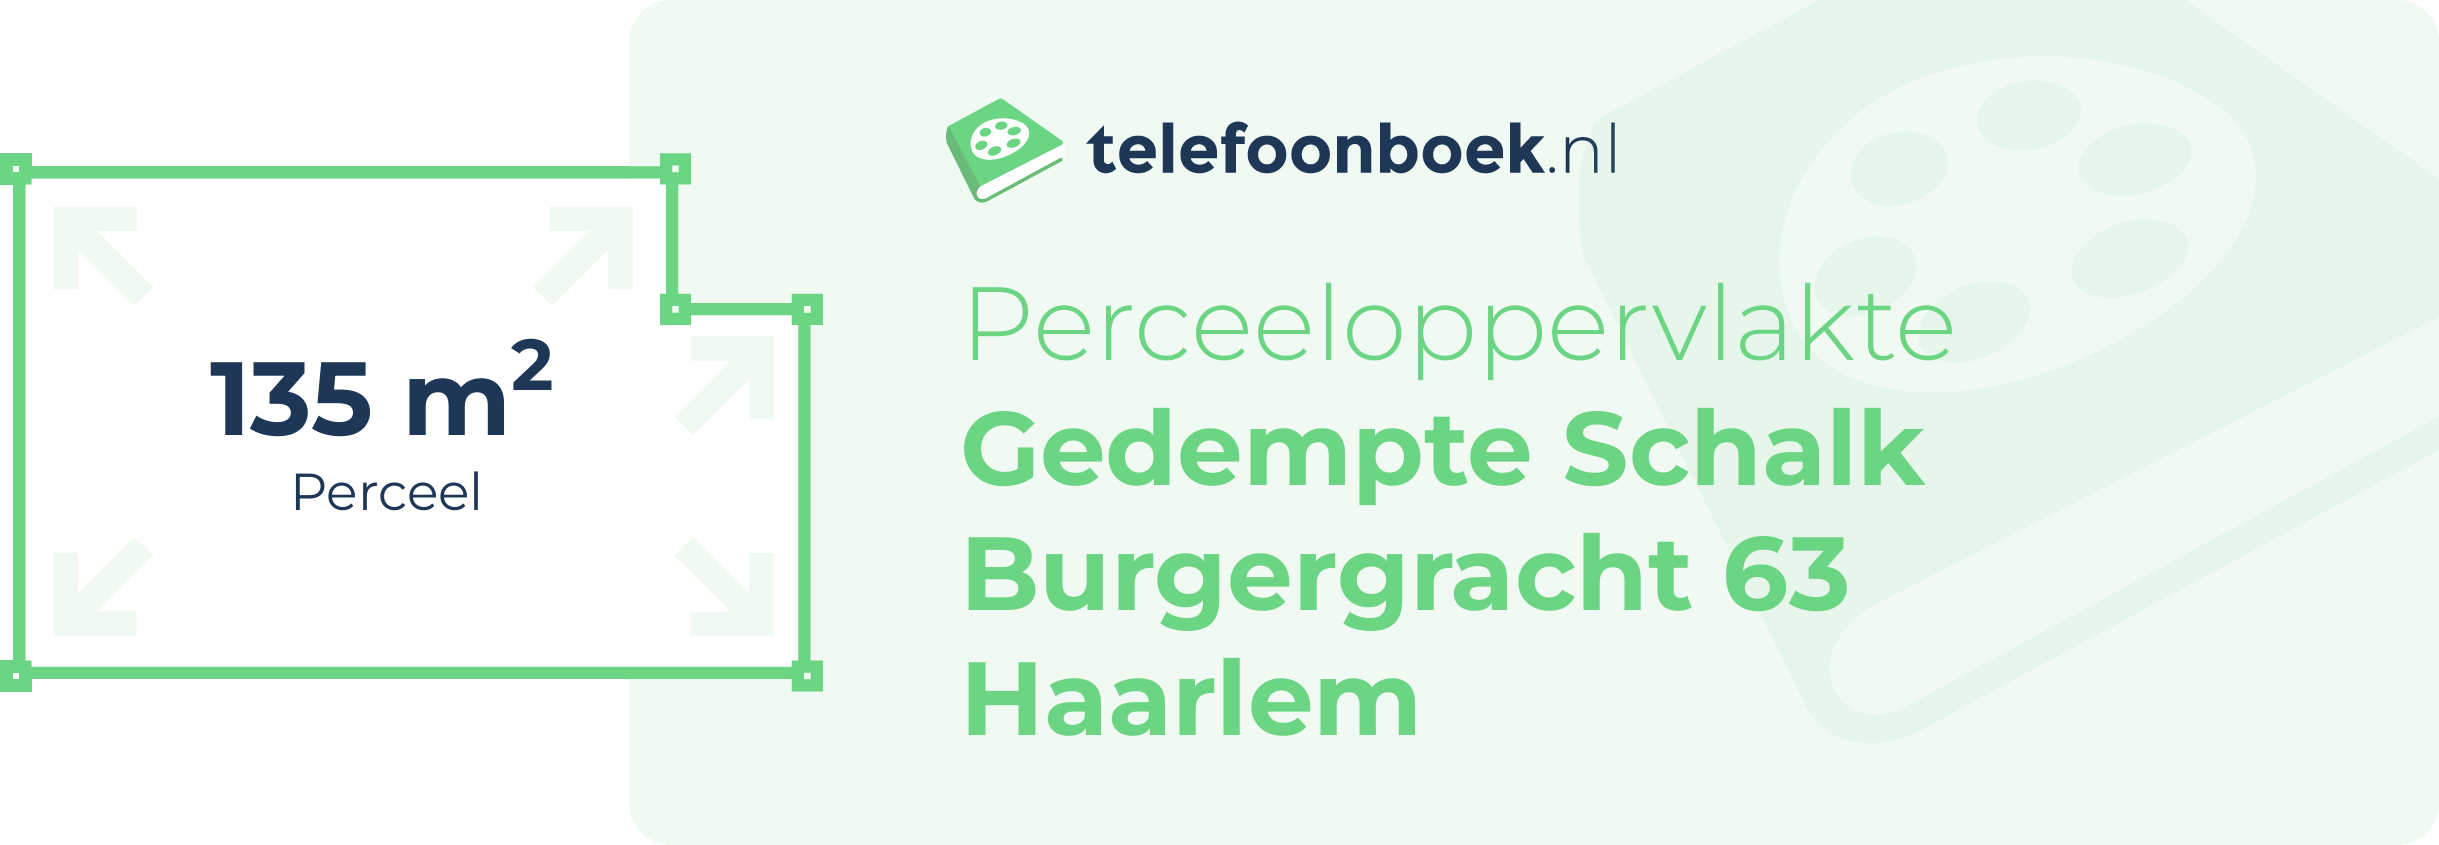 Perceeloppervlakte Gedempte Schalk Burgergracht 63 Haarlem